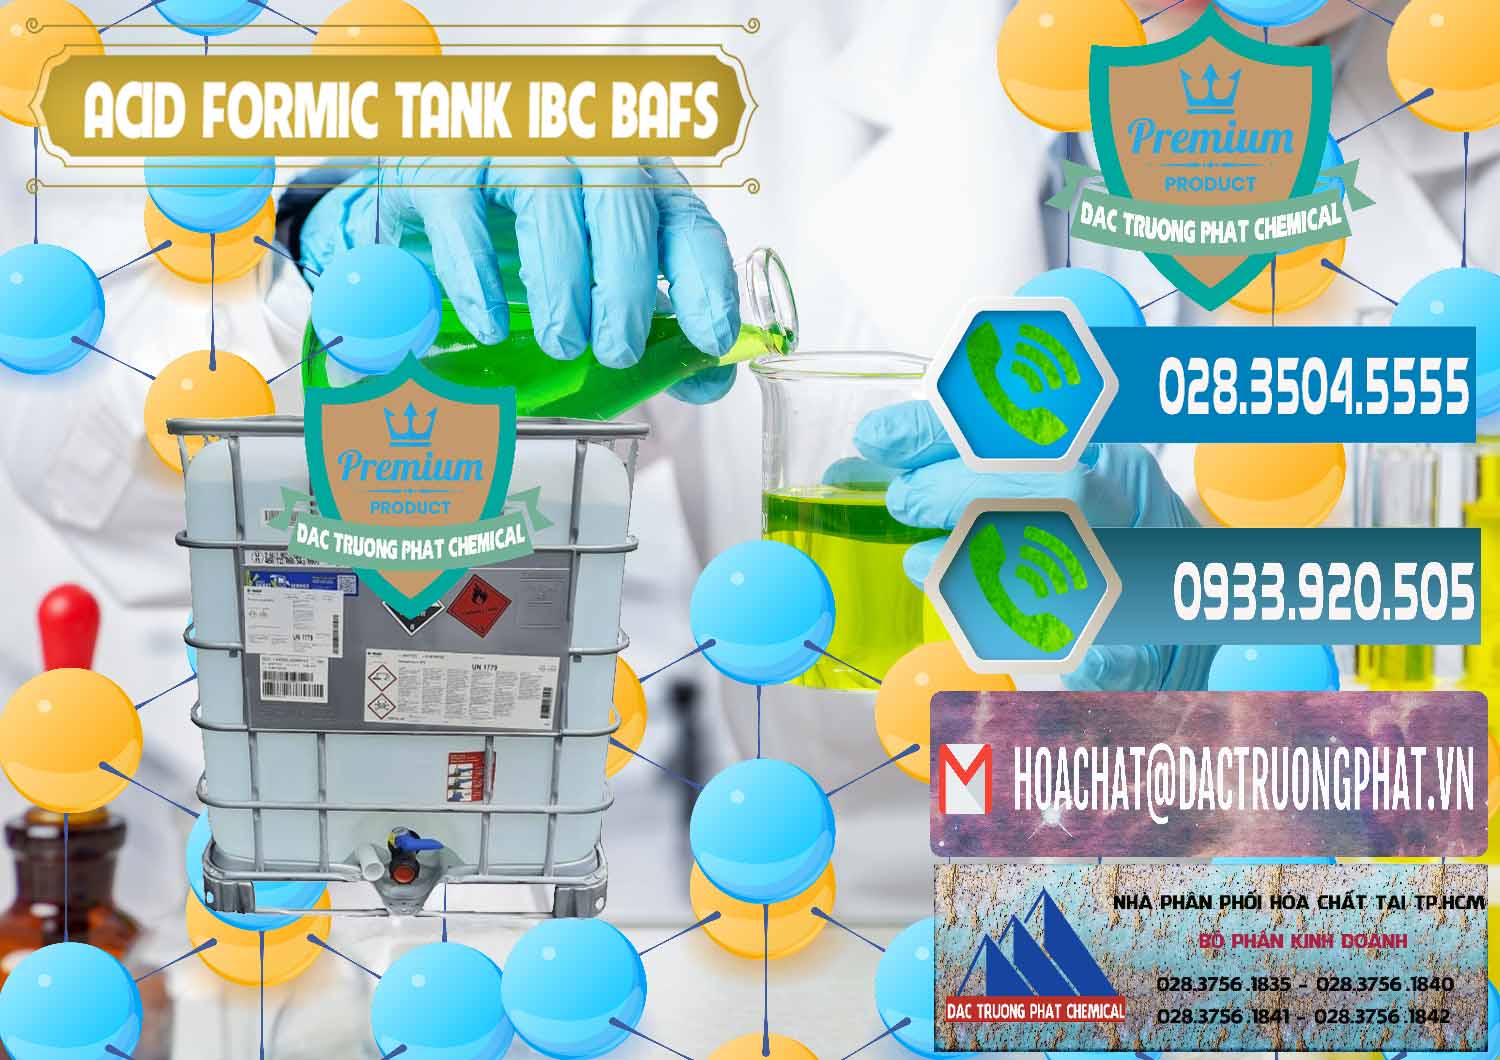 Cty chuyên nhập khẩu & bán Acid Formic - Axit Formic Tank - Bồn IBC BASF Đức - 0366 - Nơi bán - phân phối hóa chất tại TP.HCM - congtyhoachat.net